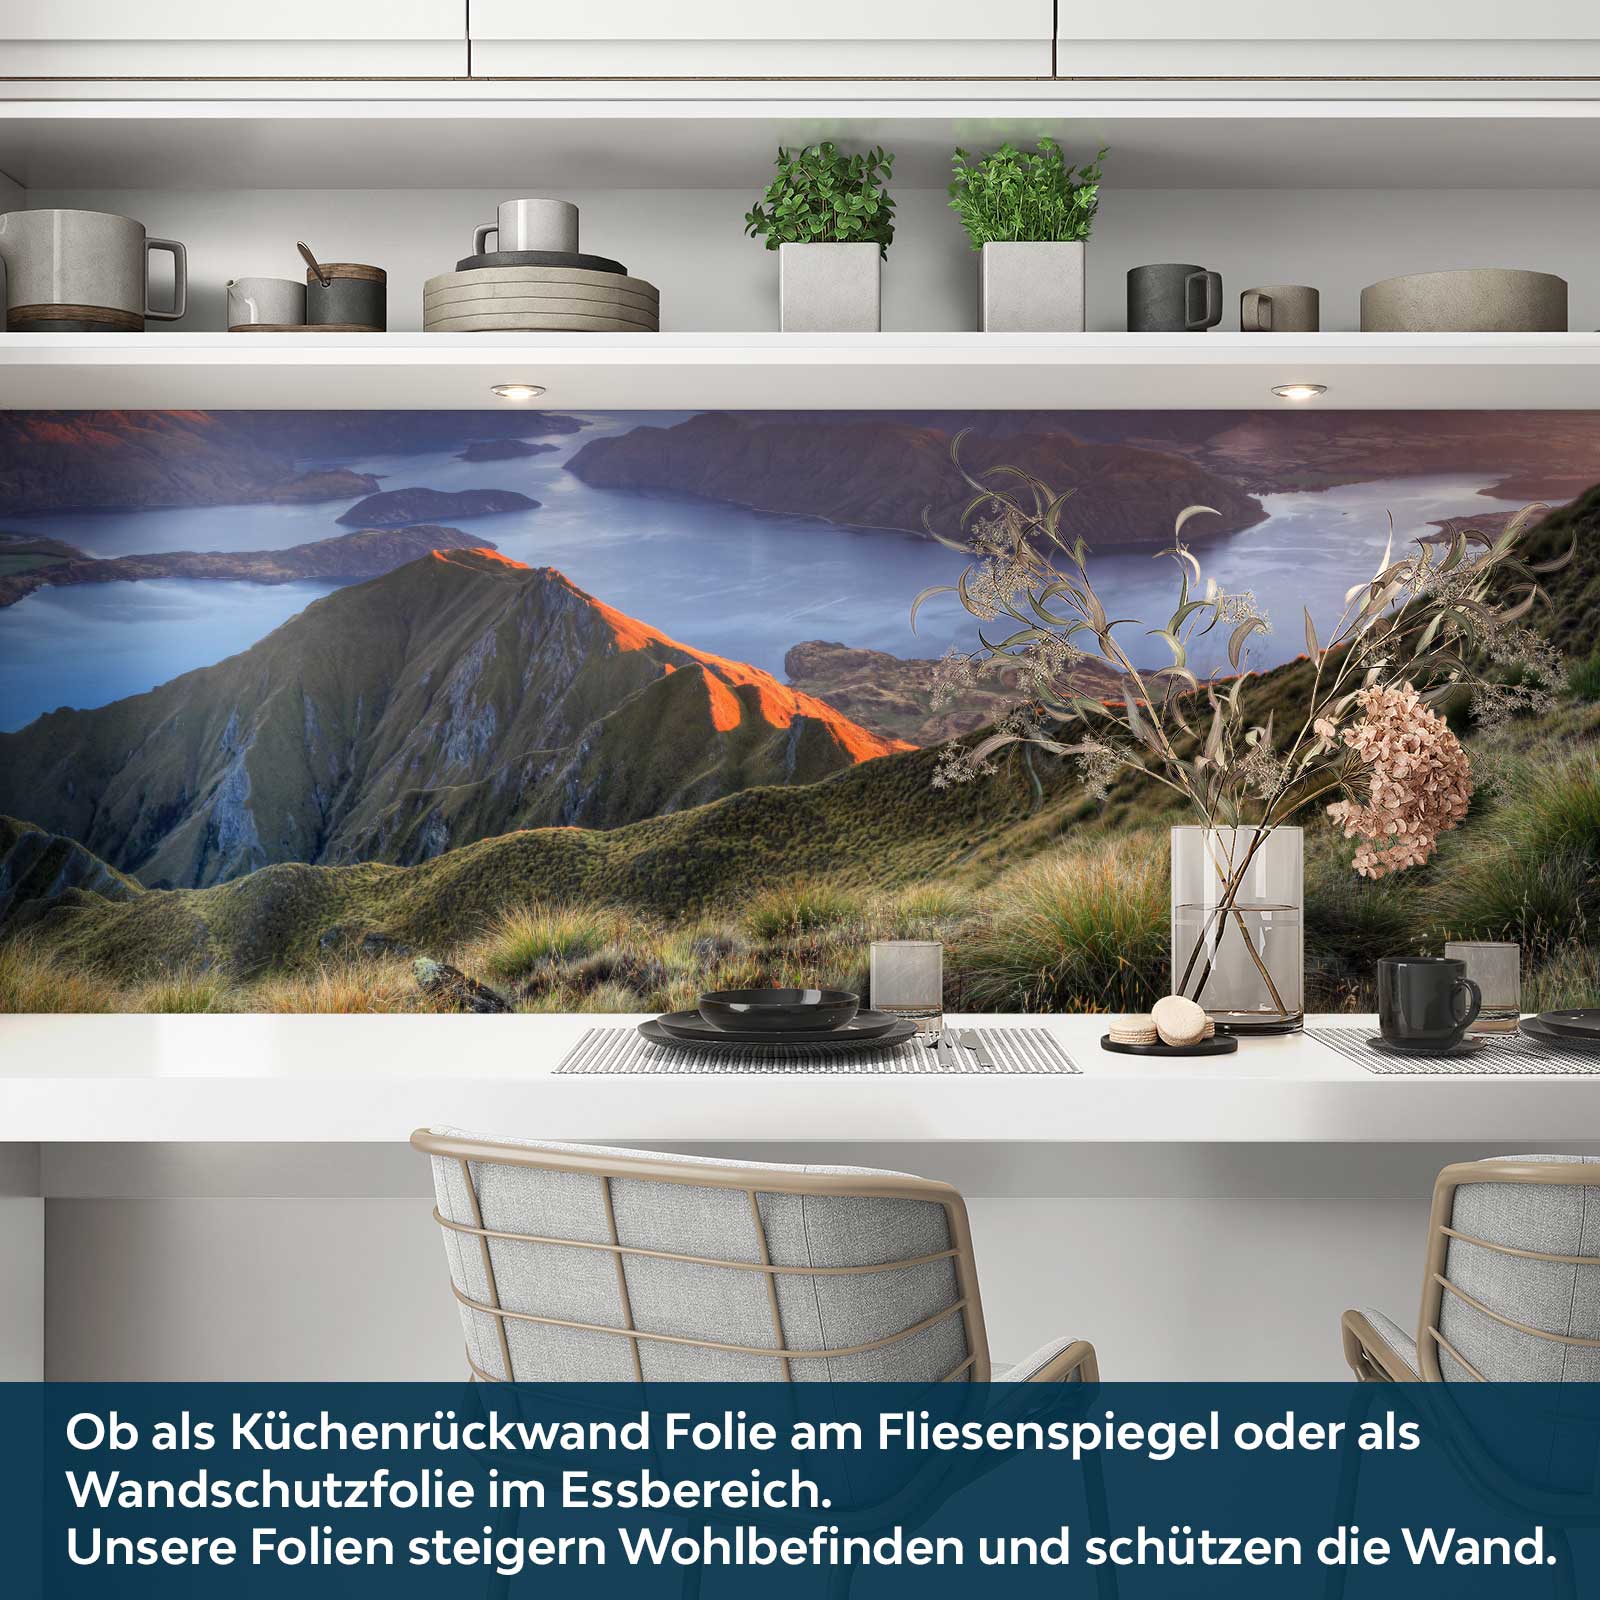 https://www.folien21.de/images/product_images/original_images/kuechenrueckwand-folie/landschaften/116/kuechenrueckwand-folie-selbstklebend-see-wanaka-a3.jpg